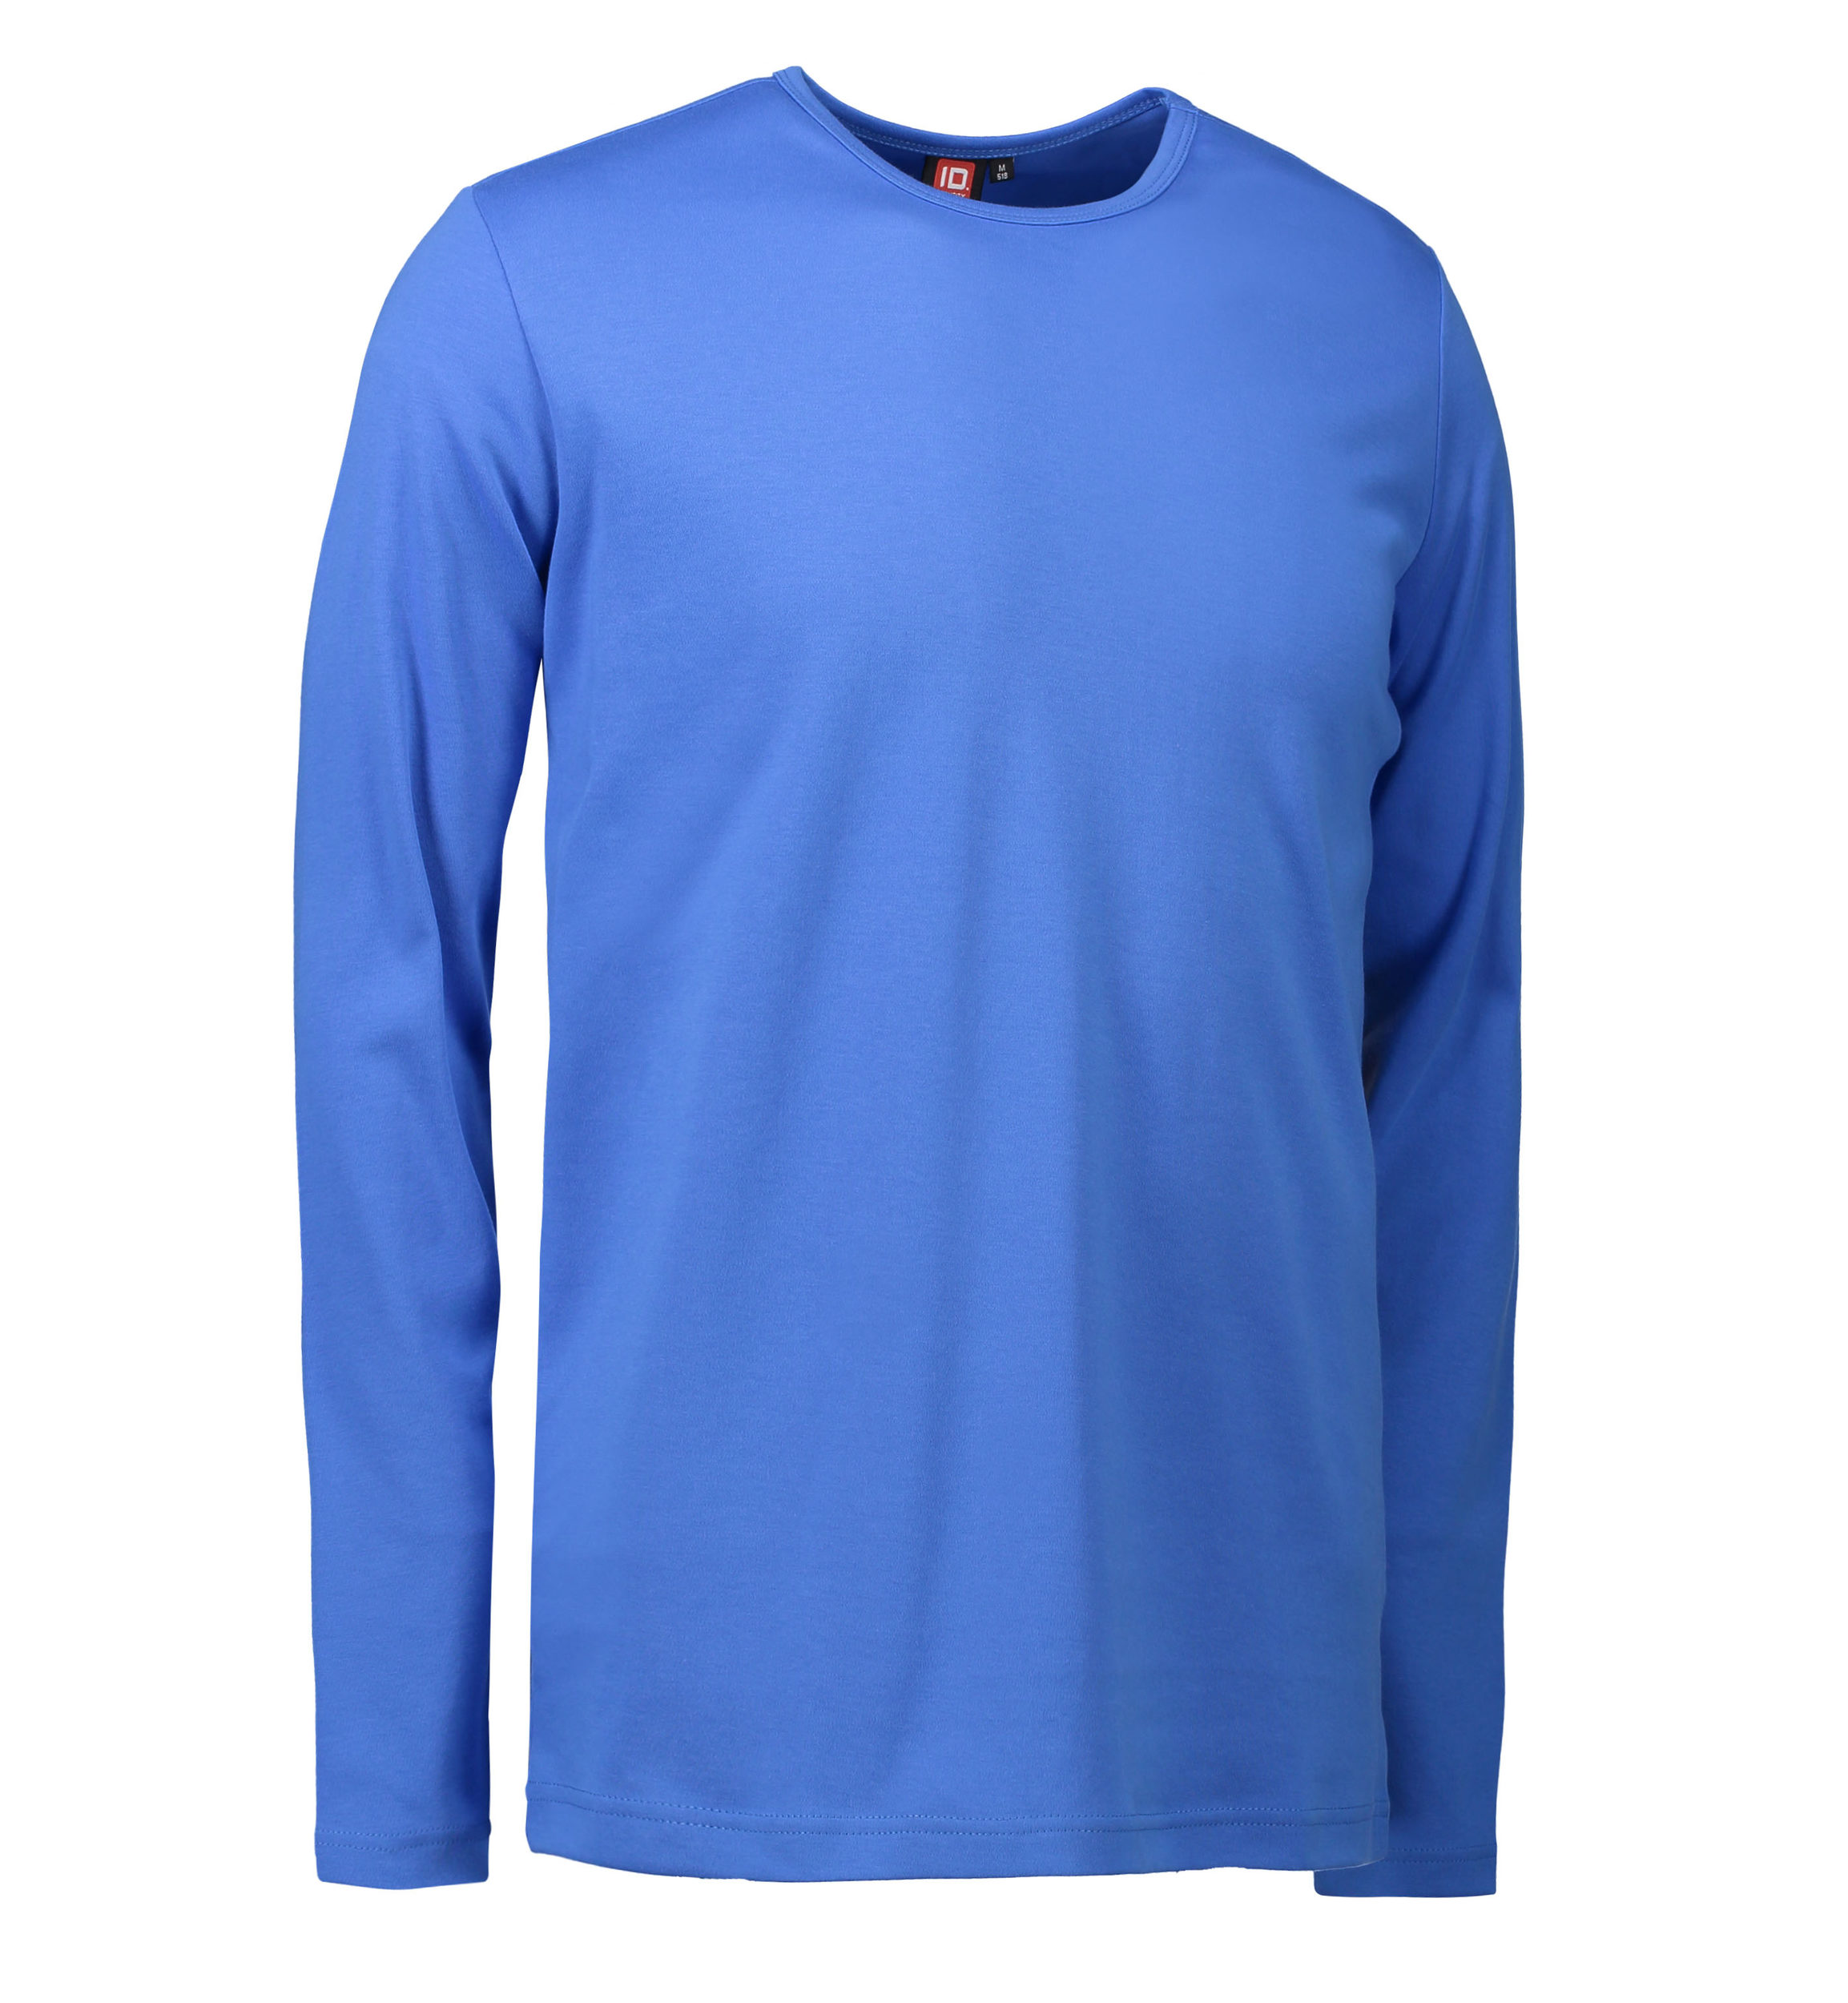 Billede af Blå langærmet t-shirt til mænd - 2XL hos Sygeplejebutikken.dk